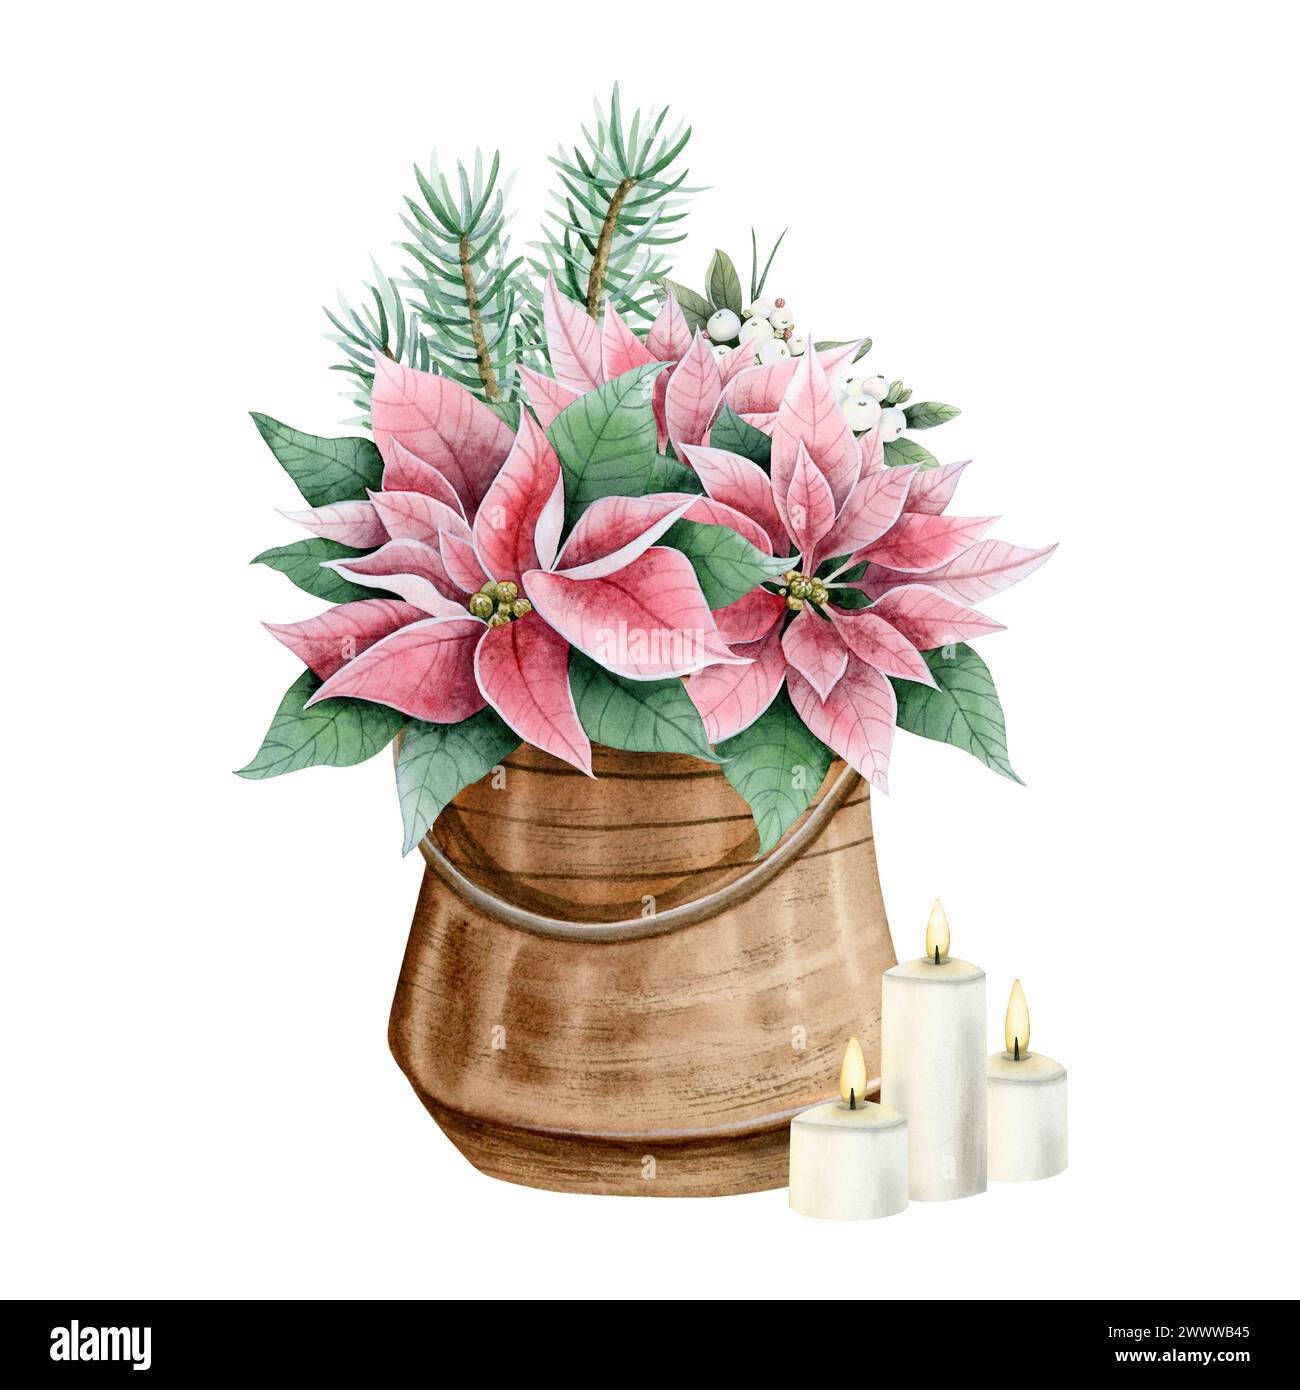 Fiori di Natale rosa poinsettia in vaso di metallo con candele in fiamme e rami d'albero illustrazione acquerello Foto Stock